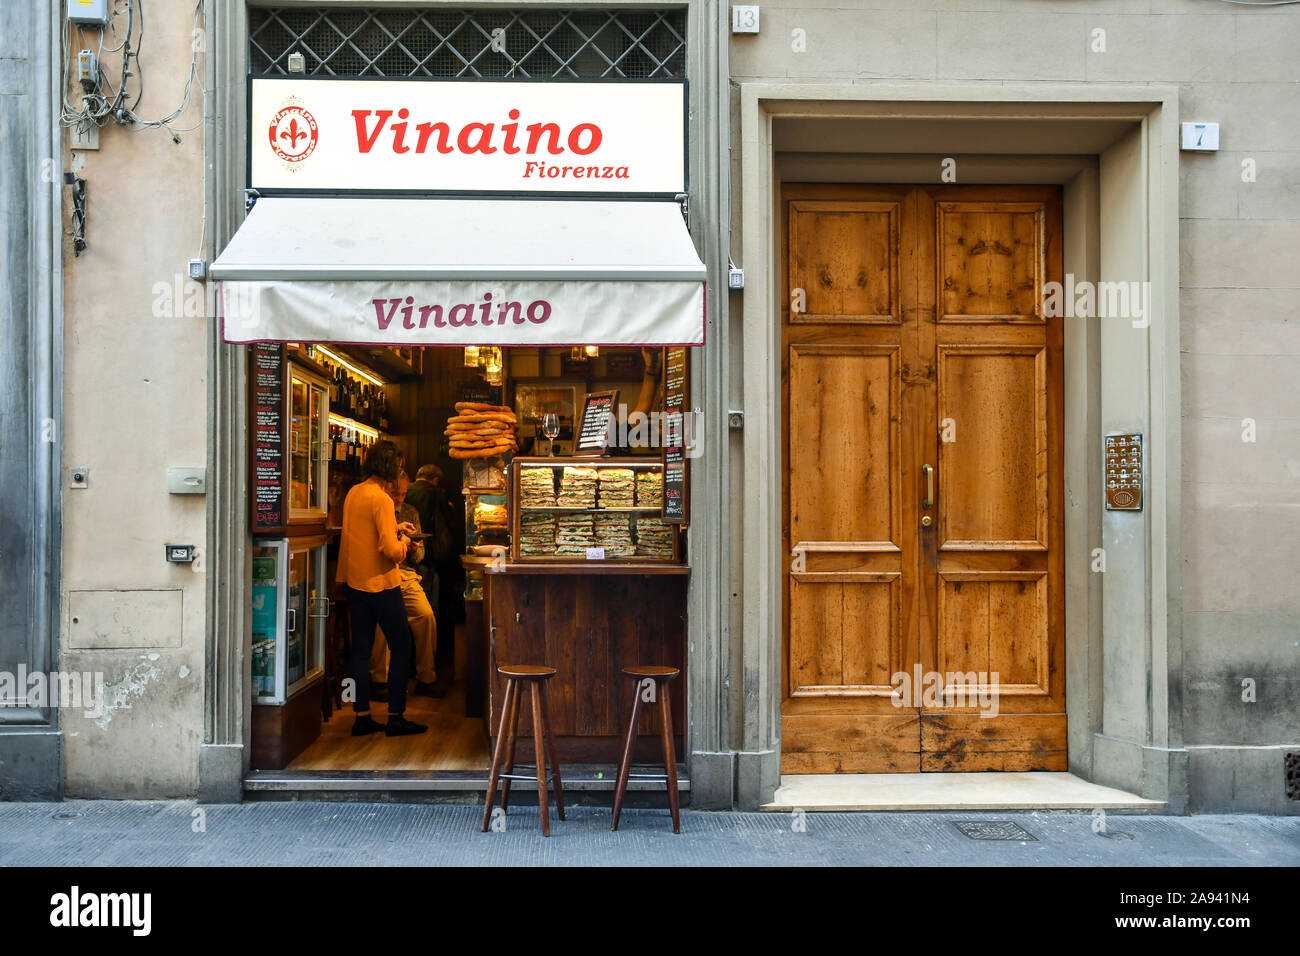 Die Außenseite des Vinaino Fiorenza, einem berühmten Wein bar verkaufen Florentiner Straße essen wie chiacciata con Finocchiona" (Fenchel Sandwich), Florenz, Italien Stockfoto